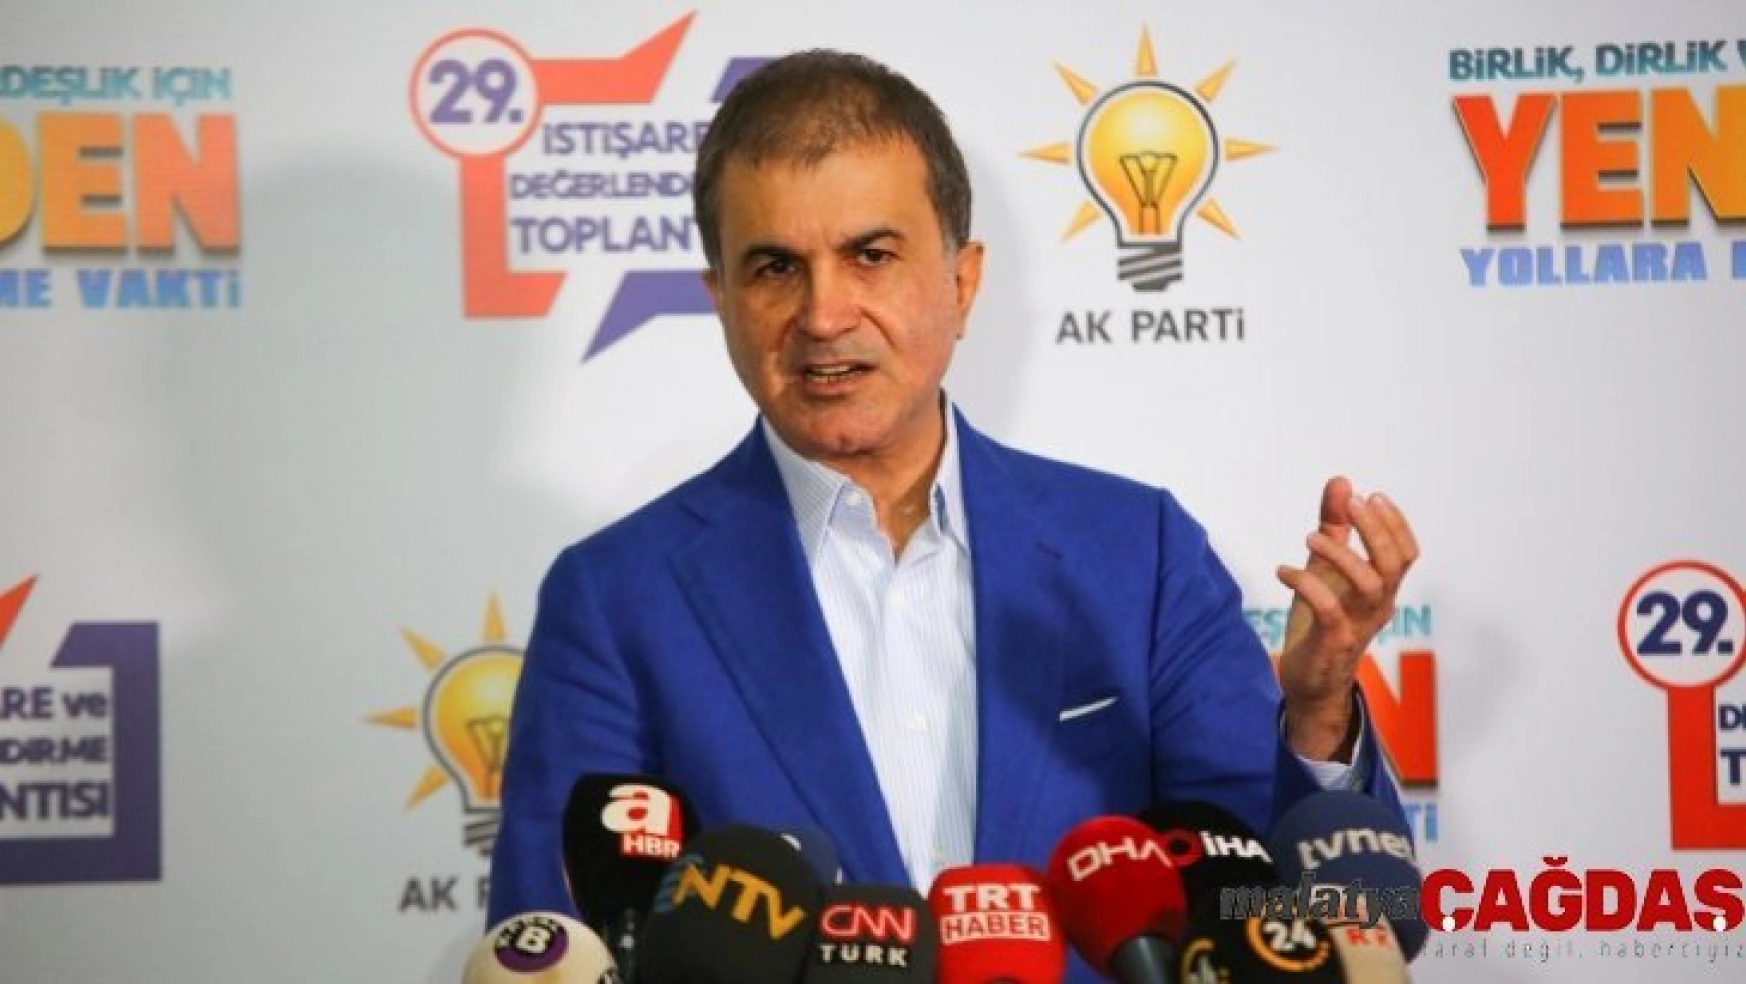 AK Parti Sözcüsü Çelik: 'CHP müsamahakar davranıyor'